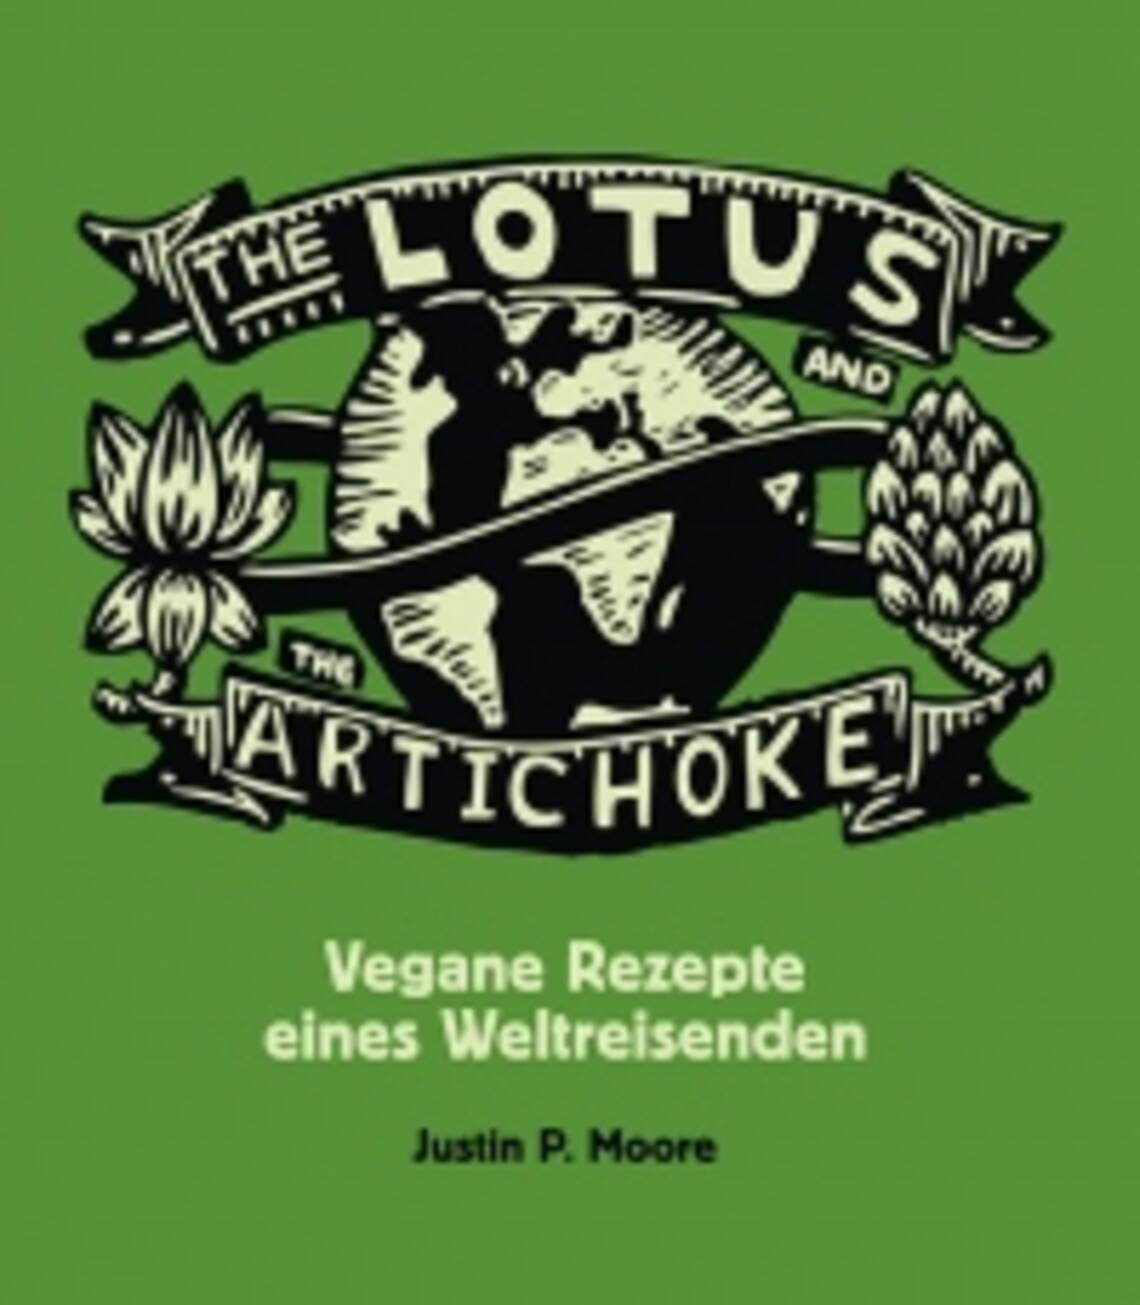 Vegane Rezepte eines Weltreisenden von Justin P. Moore